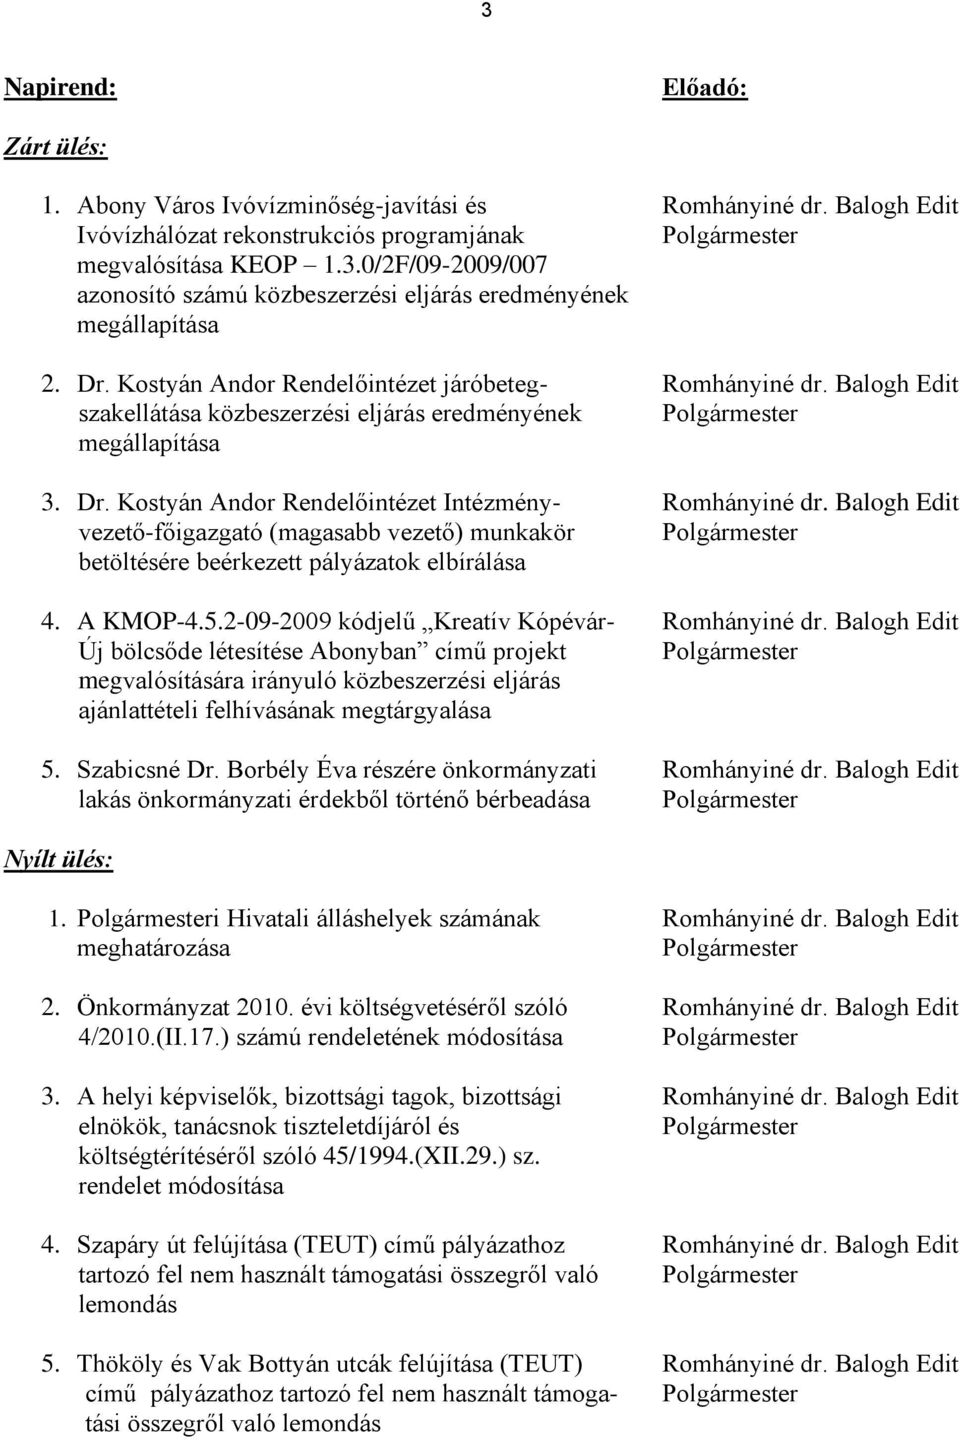 Kostyán Andor Rendelőintézet Intézmény- Romhányiné dr. Balogh Edit vezető-főigazgató (magasabb vezető) munkakör Polgármester betöltésére beérkezett pályázatok elbírálása 4. A KMOP-4.5.